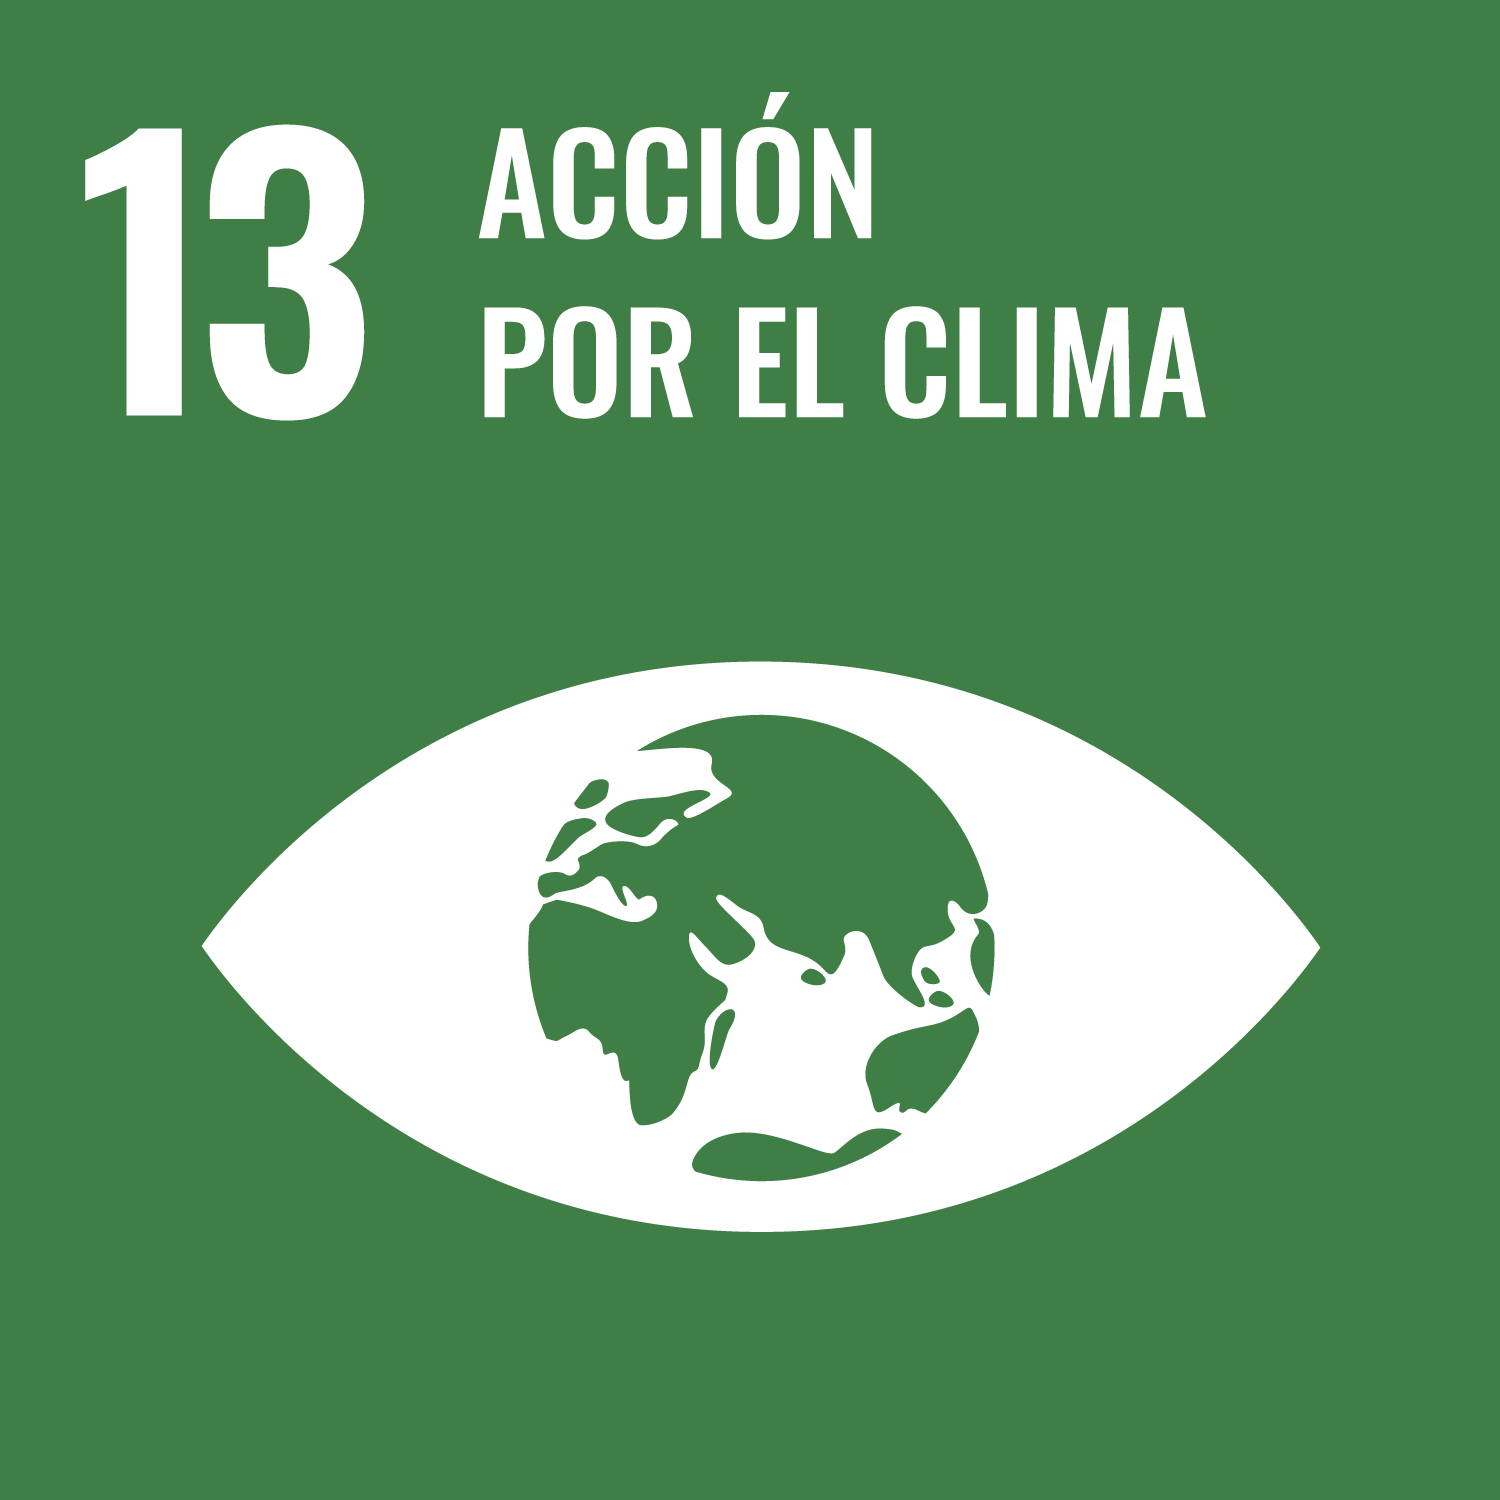 ODS 13 Objetivo de Desarrollo Sostenible 13 Acción por el clima